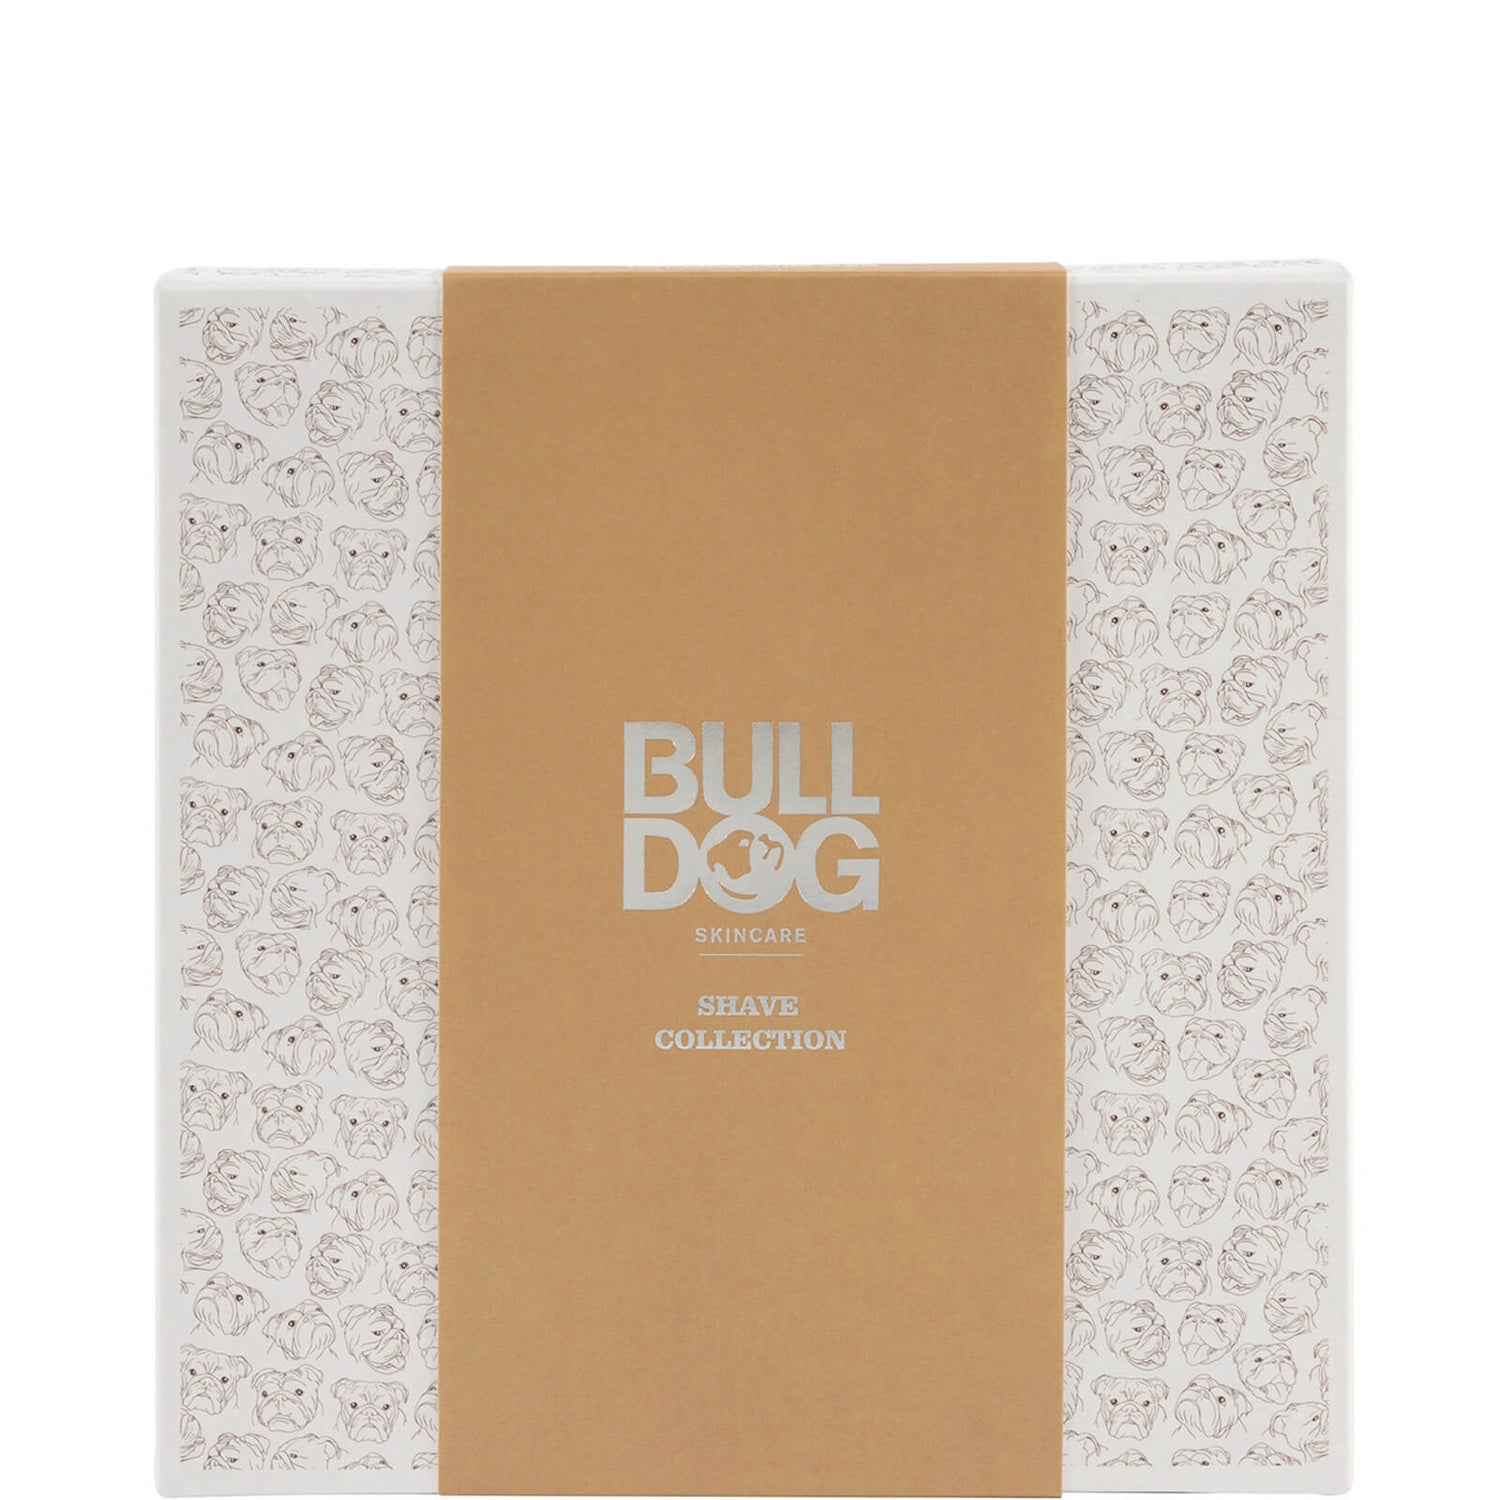 Συλλογή ξυρίσματος Bulldog